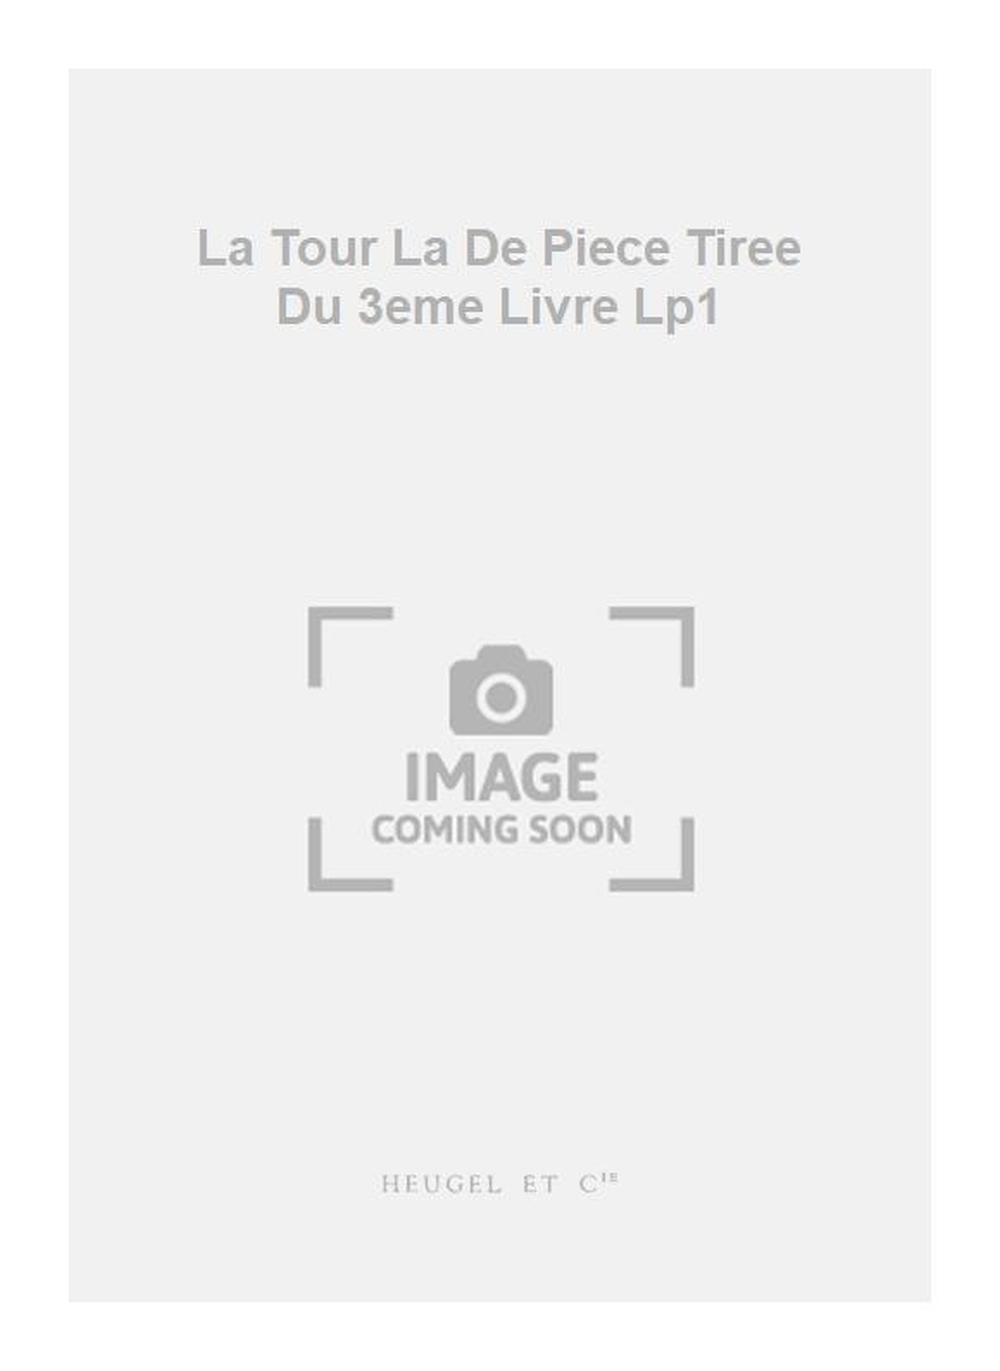 Jacques du Phly: La Tour La De Piece Tiree Du 3eme Livre Lp1